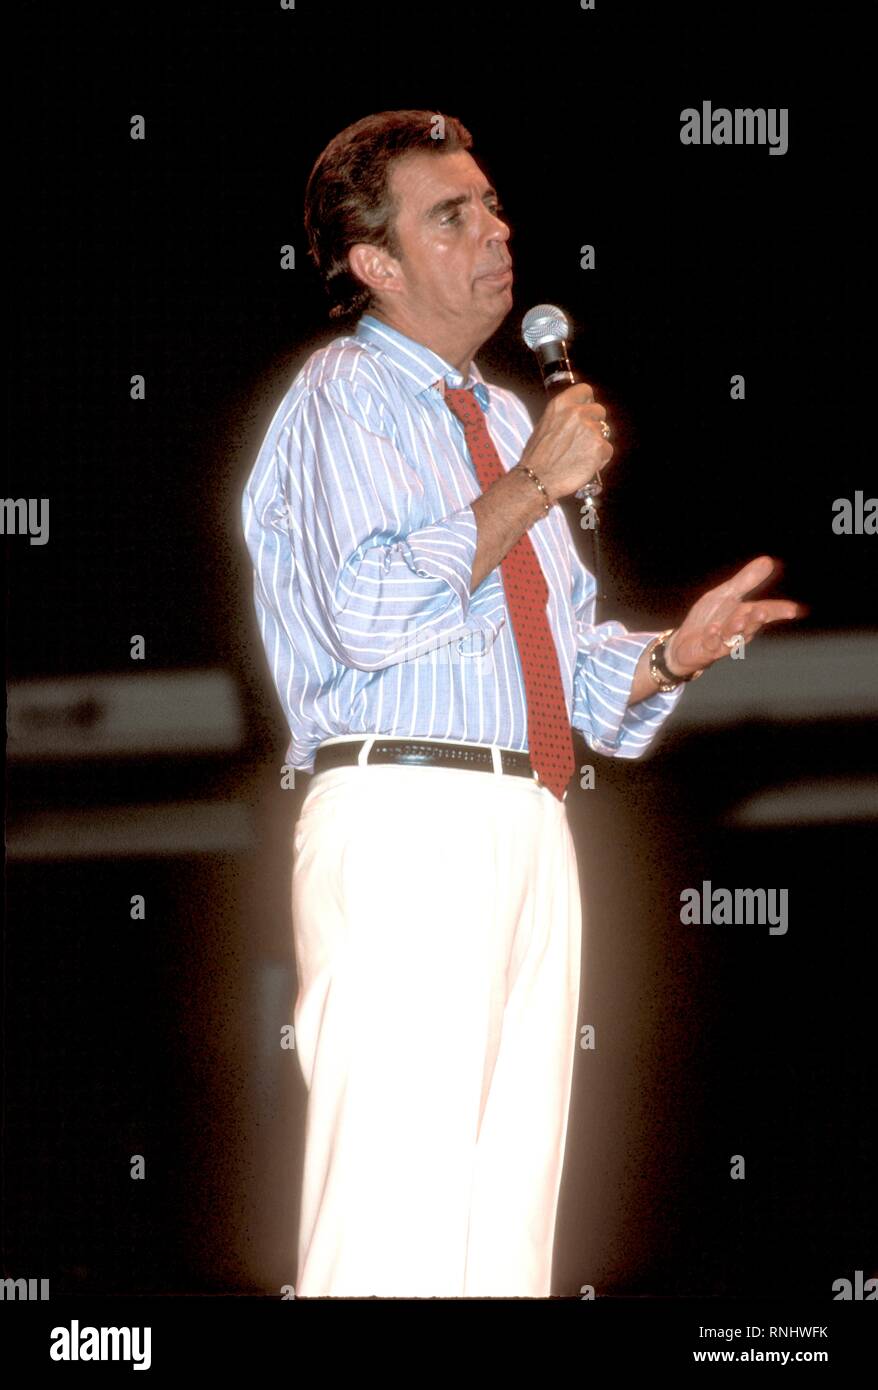 La televisione talk show host degli anni ottanta che ha introdotto il 'televisione spazzatura' formato, Morton Downey Jr è mostrato sul palco durante un concerto aspetto. Foto Stock